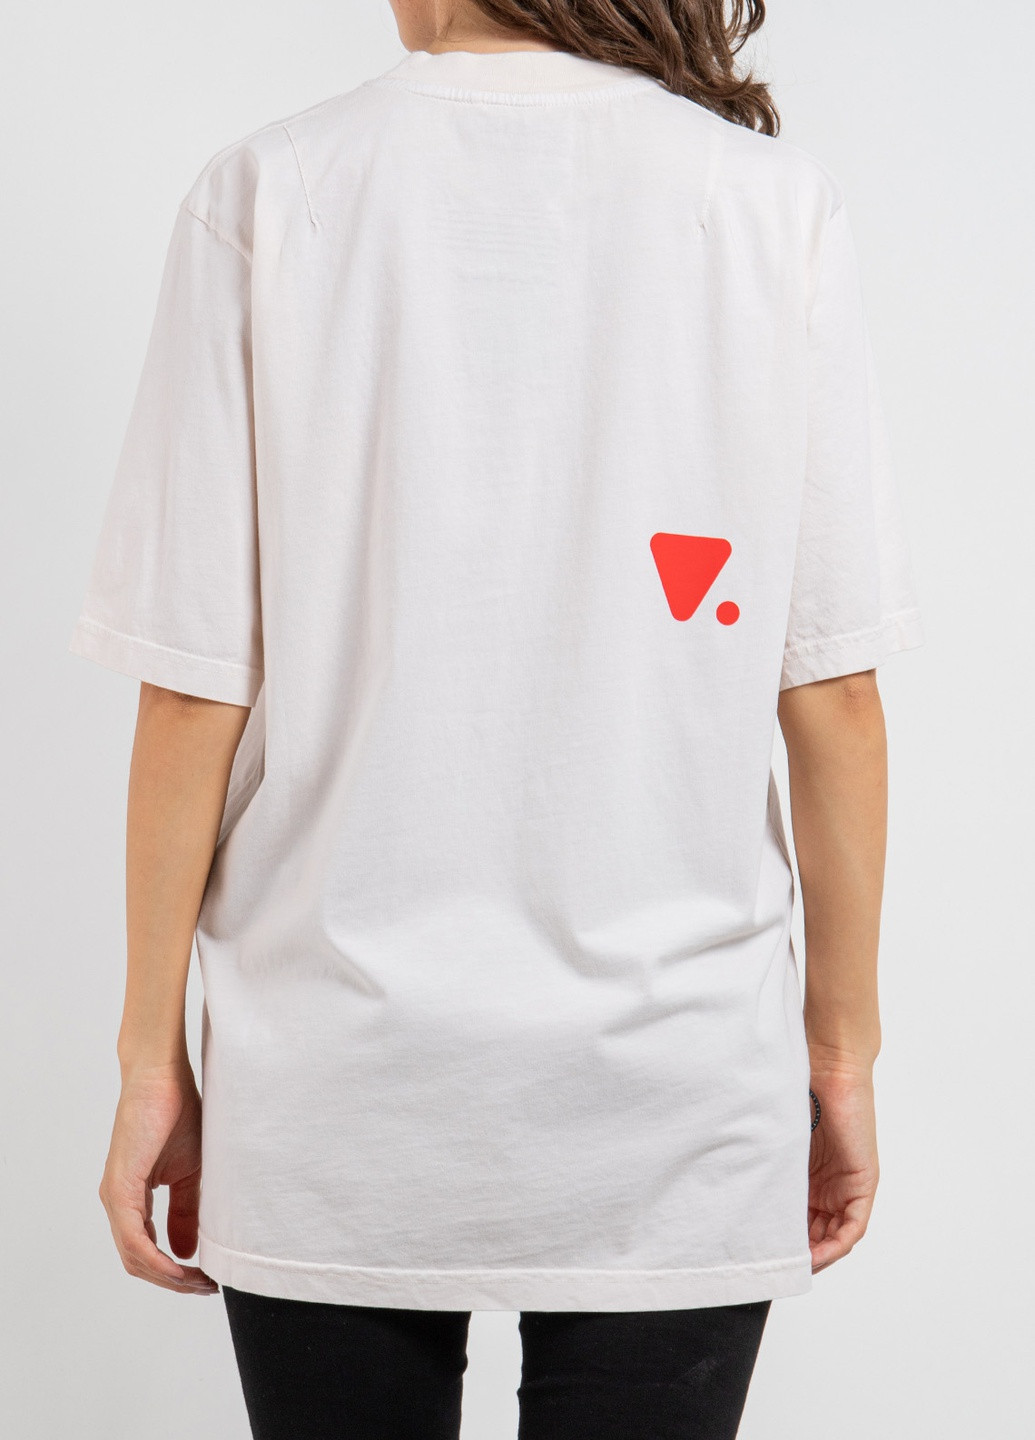 Белая футболка с логотипом цвета морской волны Valvola